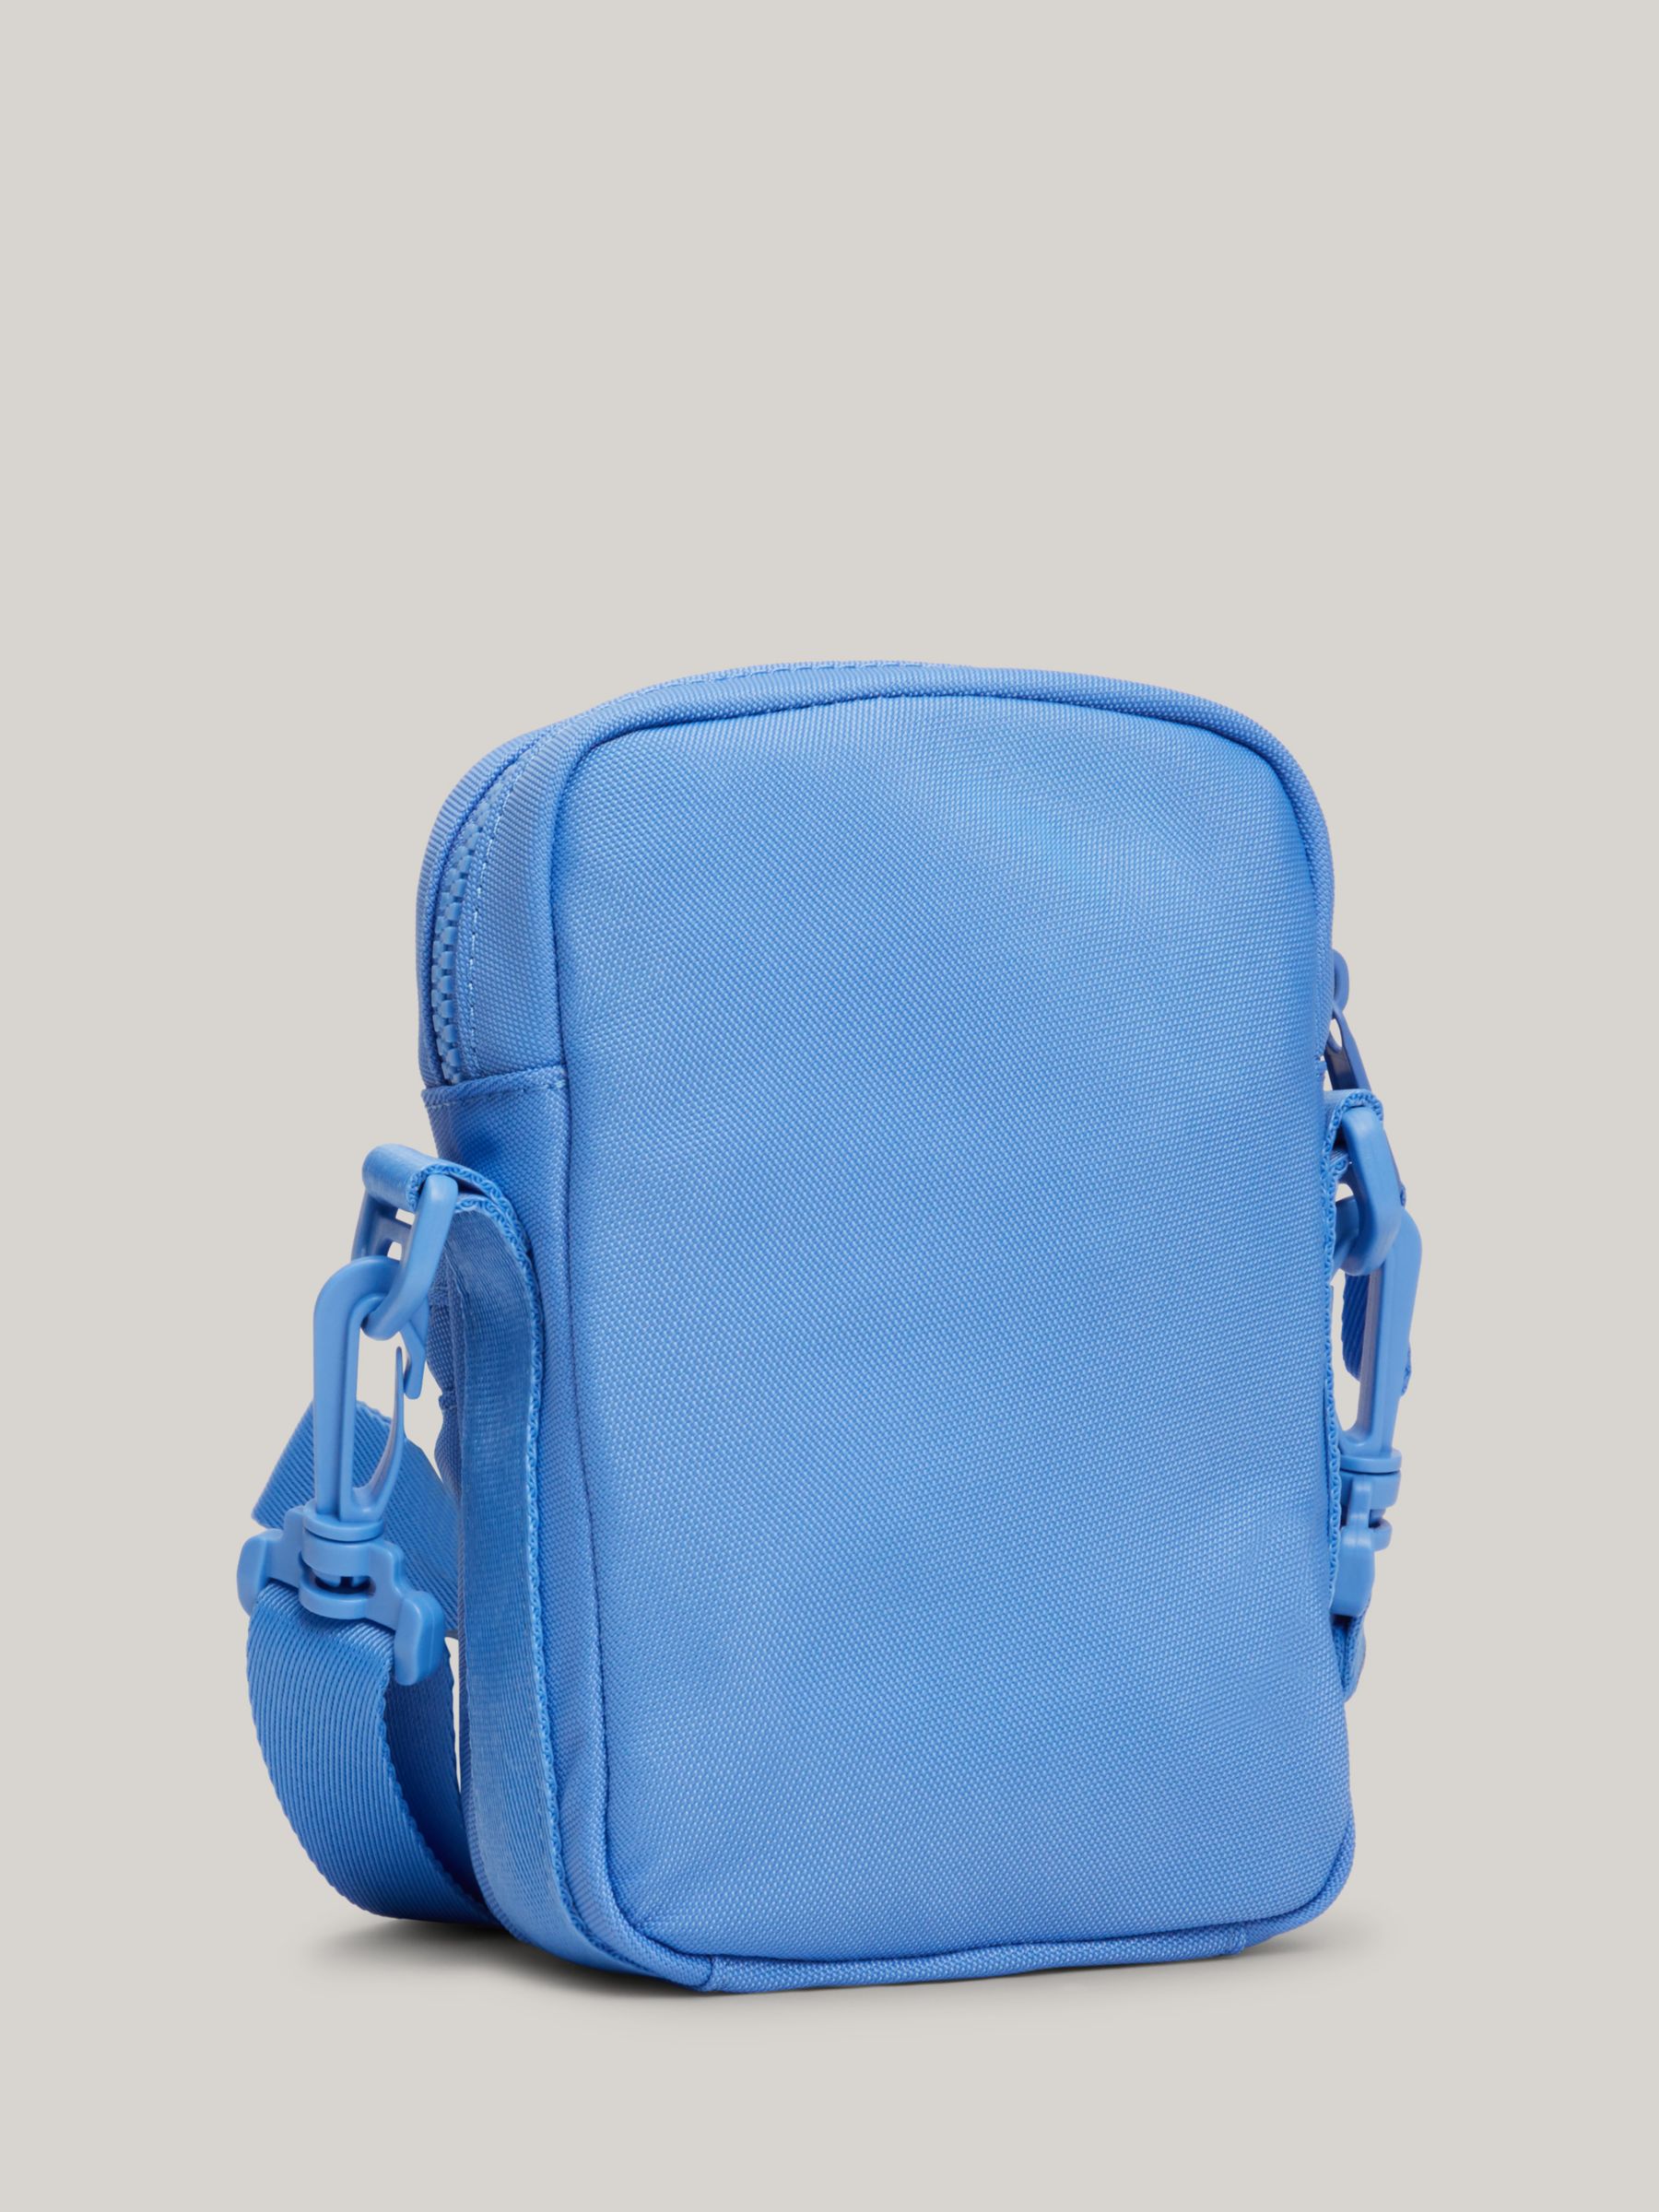 Buy Tommy Hilfiger Kids' Mini Reporter Bag, Blue Spell Online at johnlewis.com